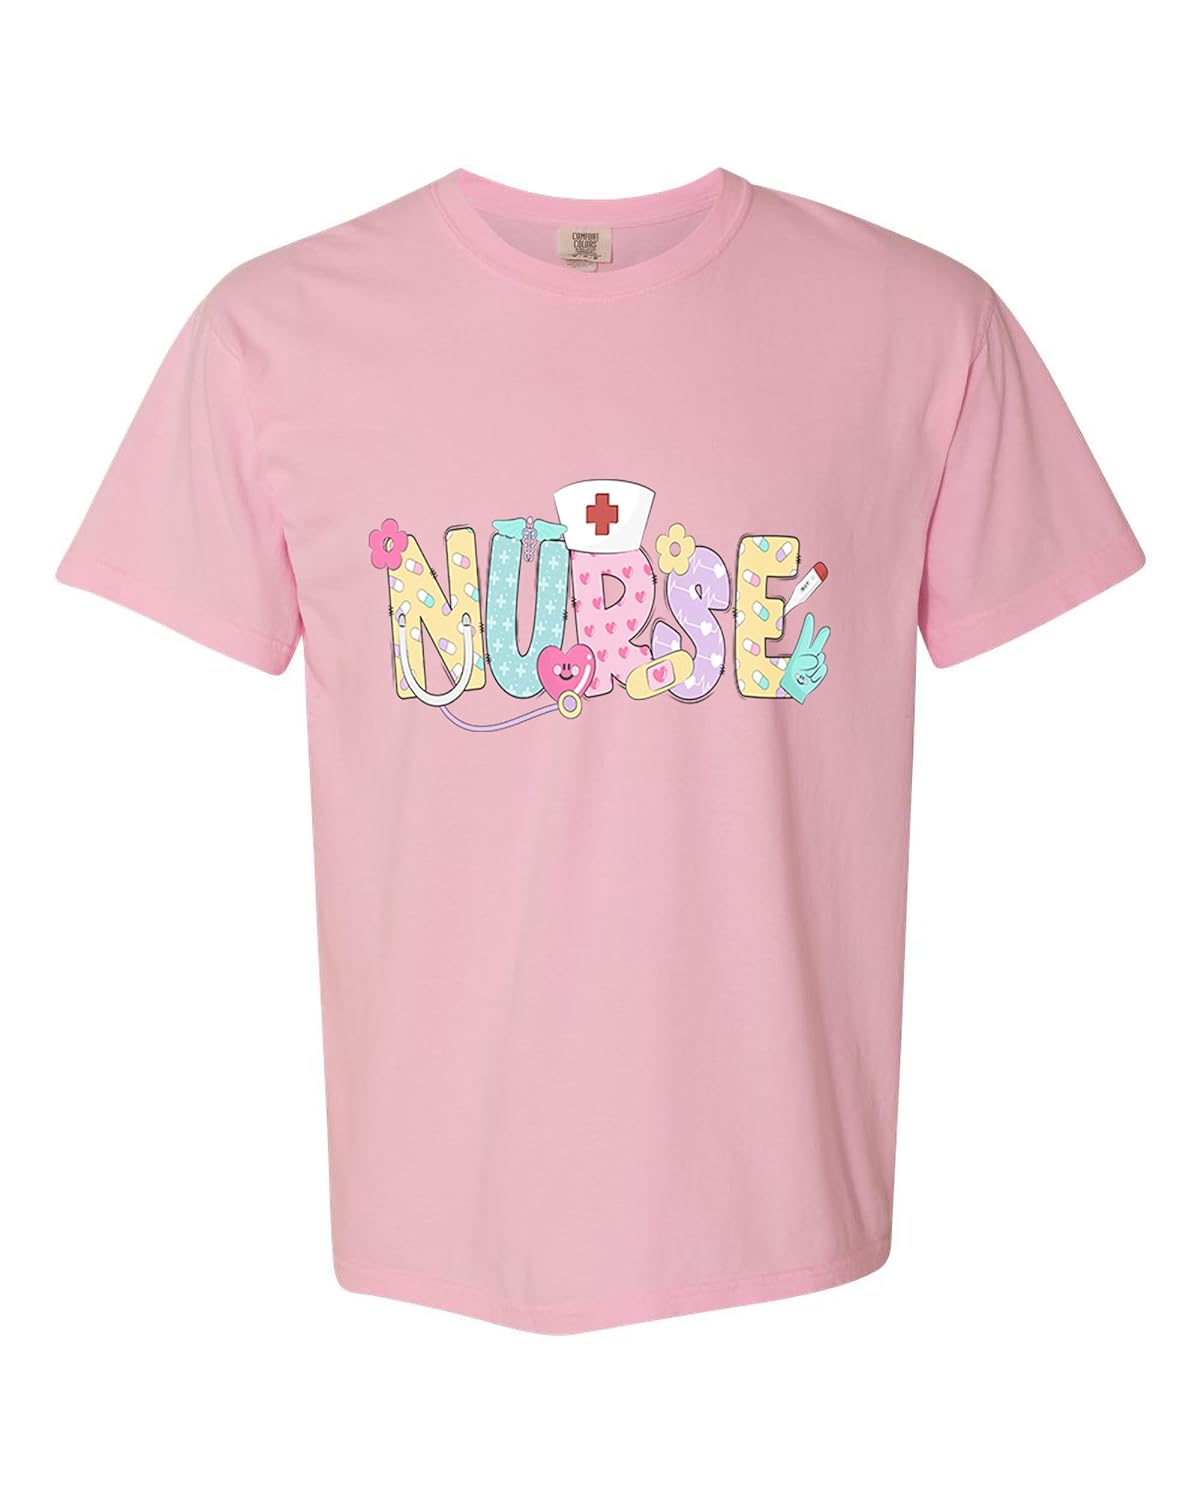 Nurse TShirts pink